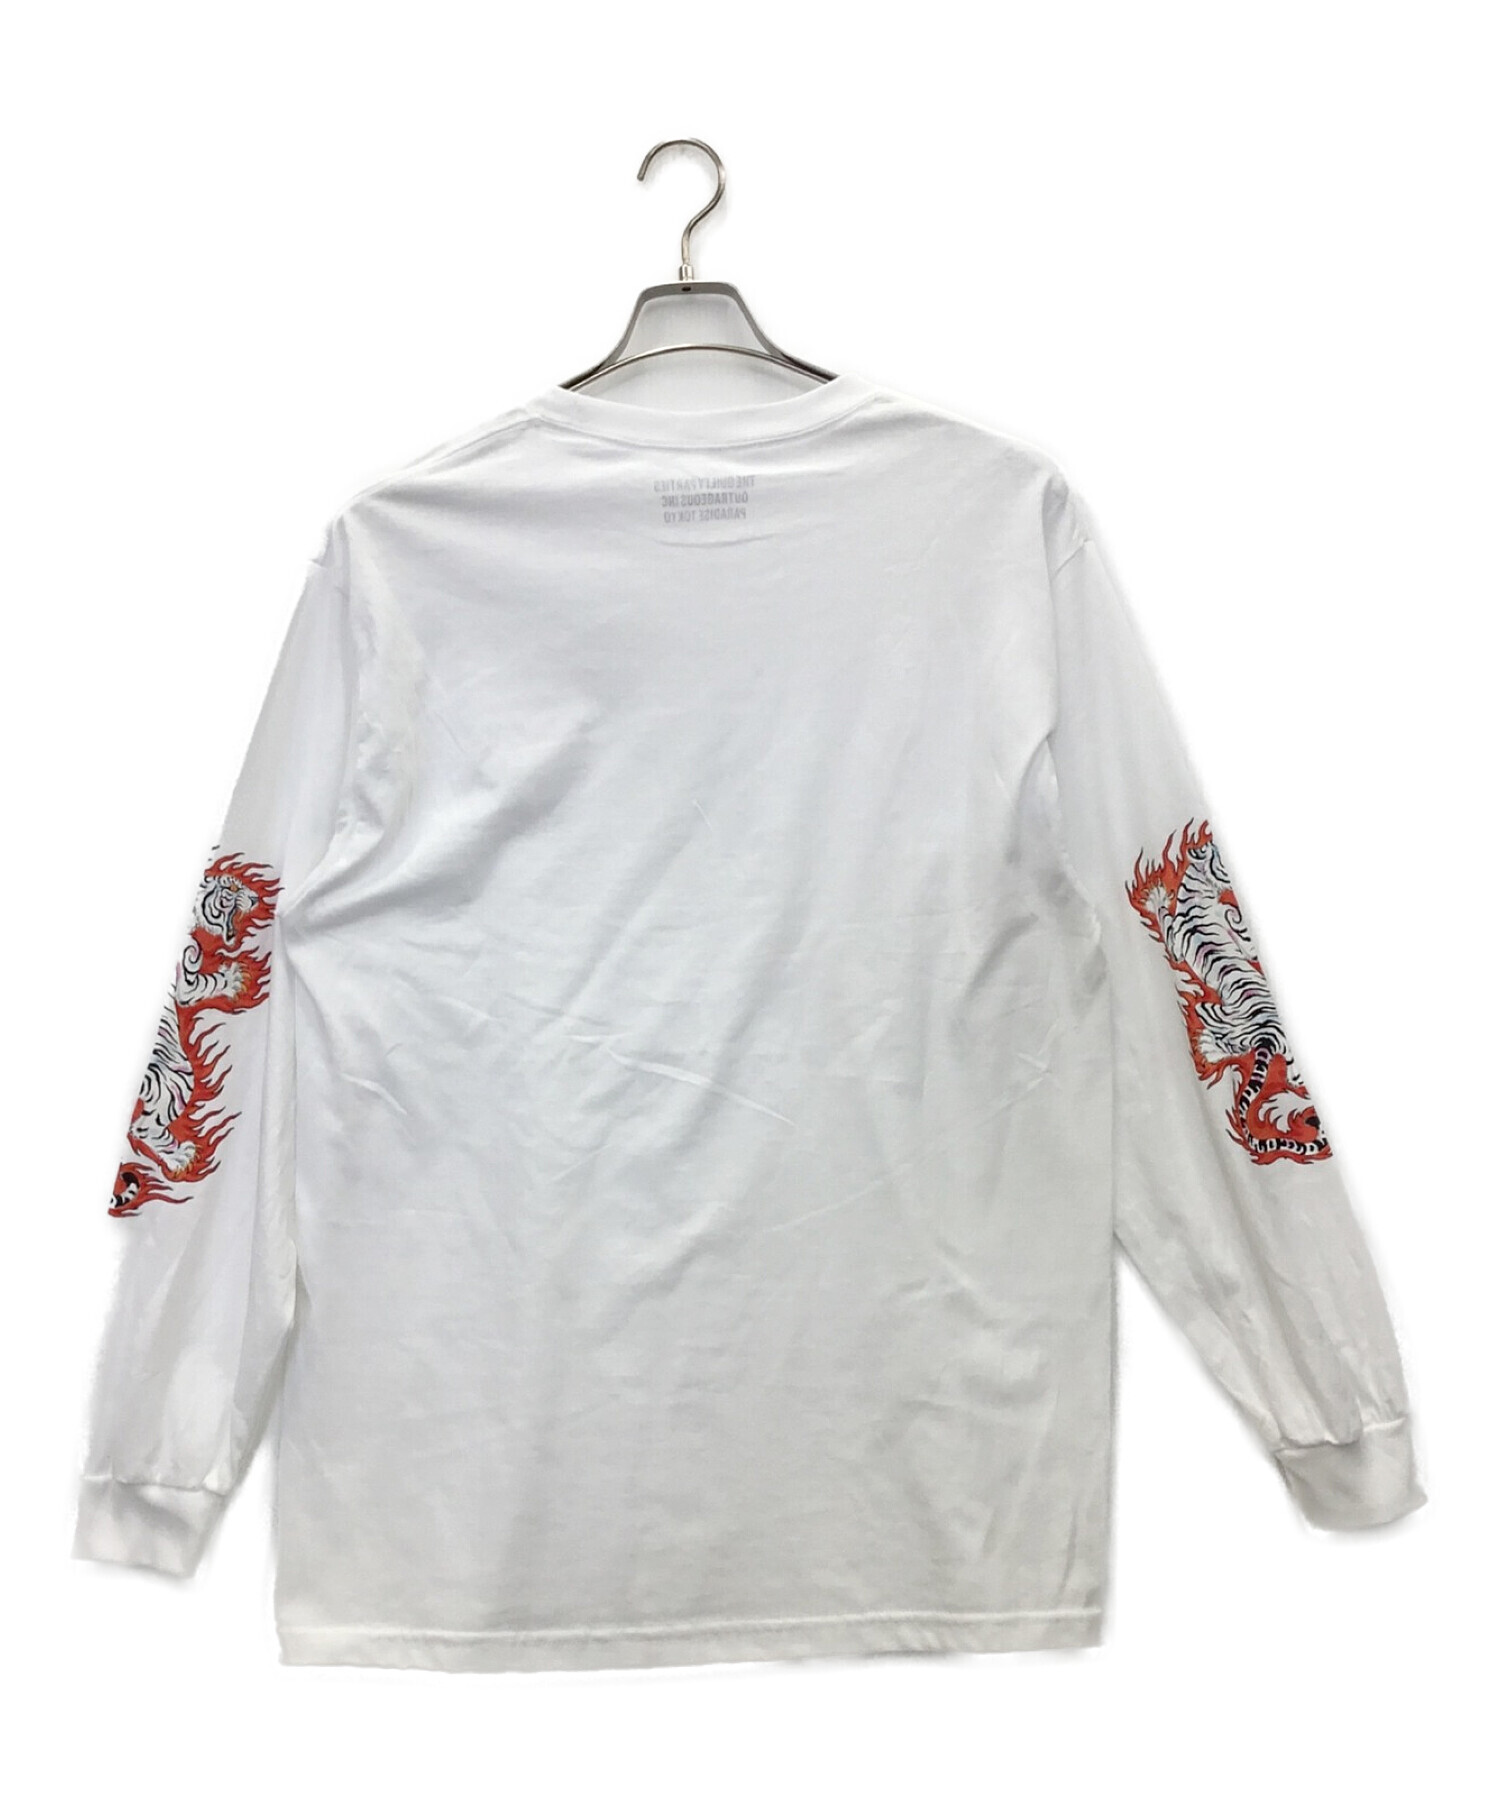 WACKO MARIA (ワコマリア) ロングスリーブTシャツ ホワイト サイズ:L